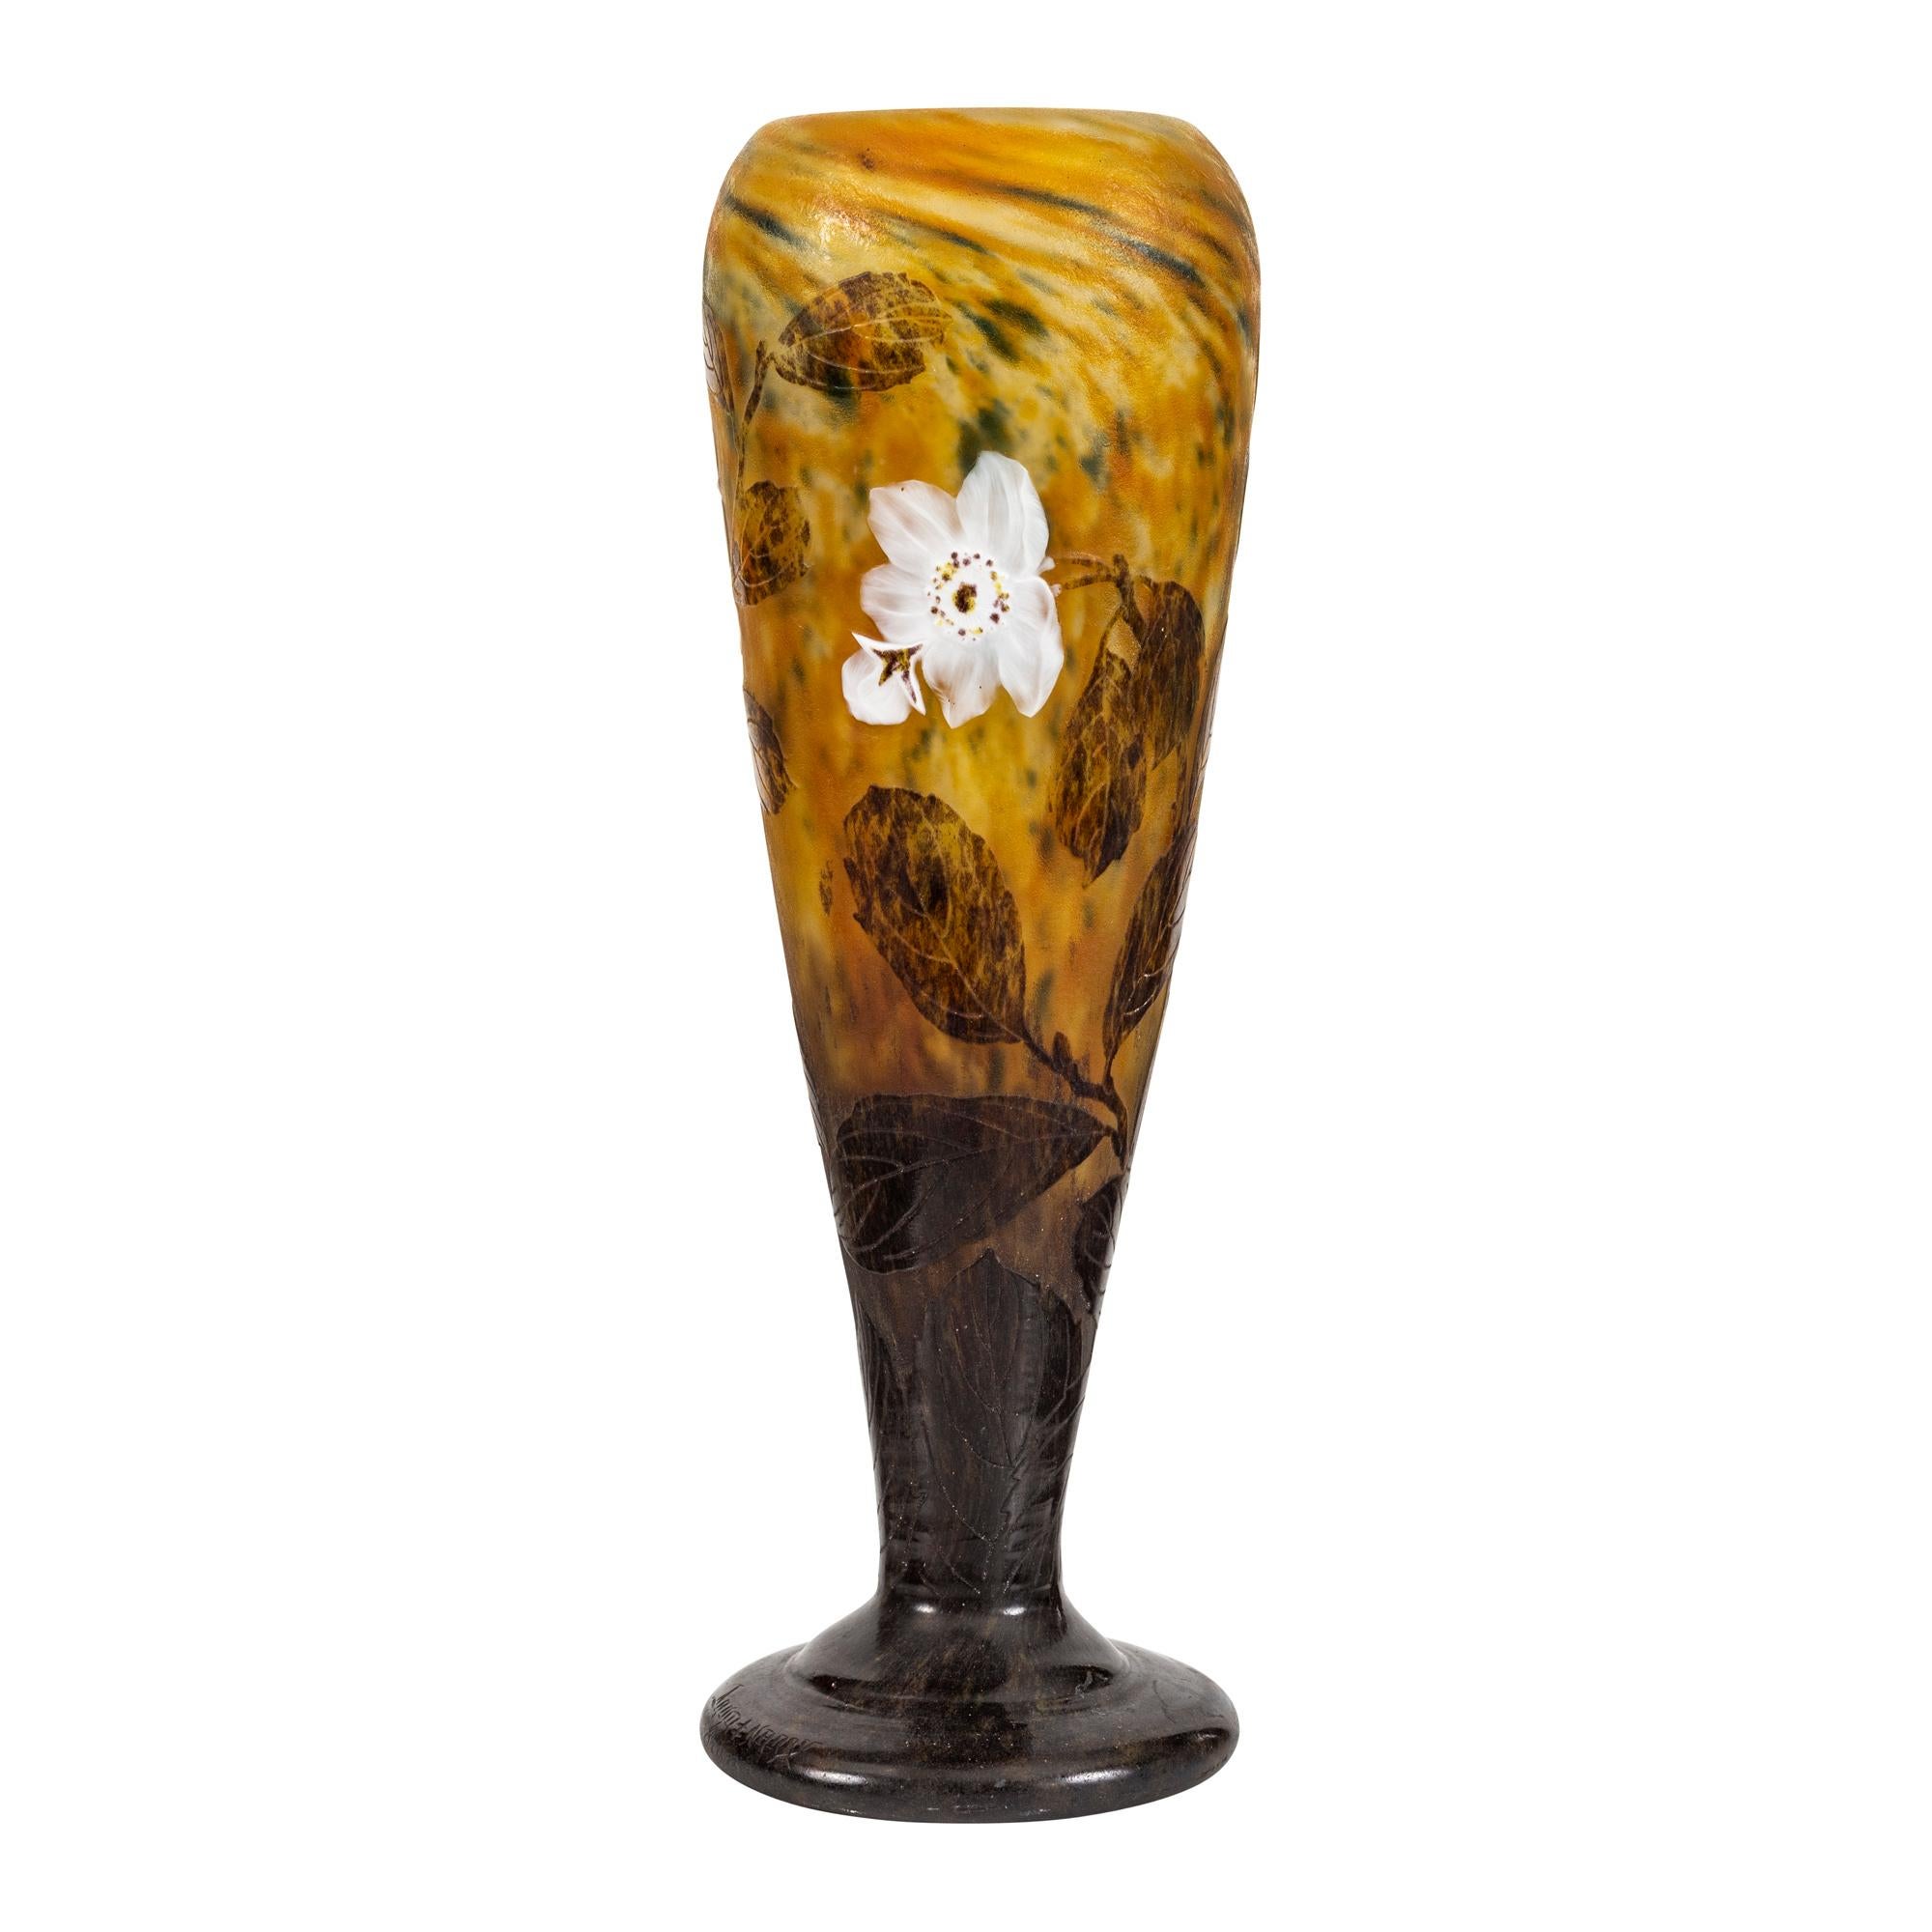 Vase en verre émaillé et camée de Daum Nancy
France, vers 1914
de forme triangulaire effilée, décorée de fleurs blanches appliquées, de feuilles vertes et de cosses fleuries sur un fond vert et jaune moucheté, reposant sur un pied